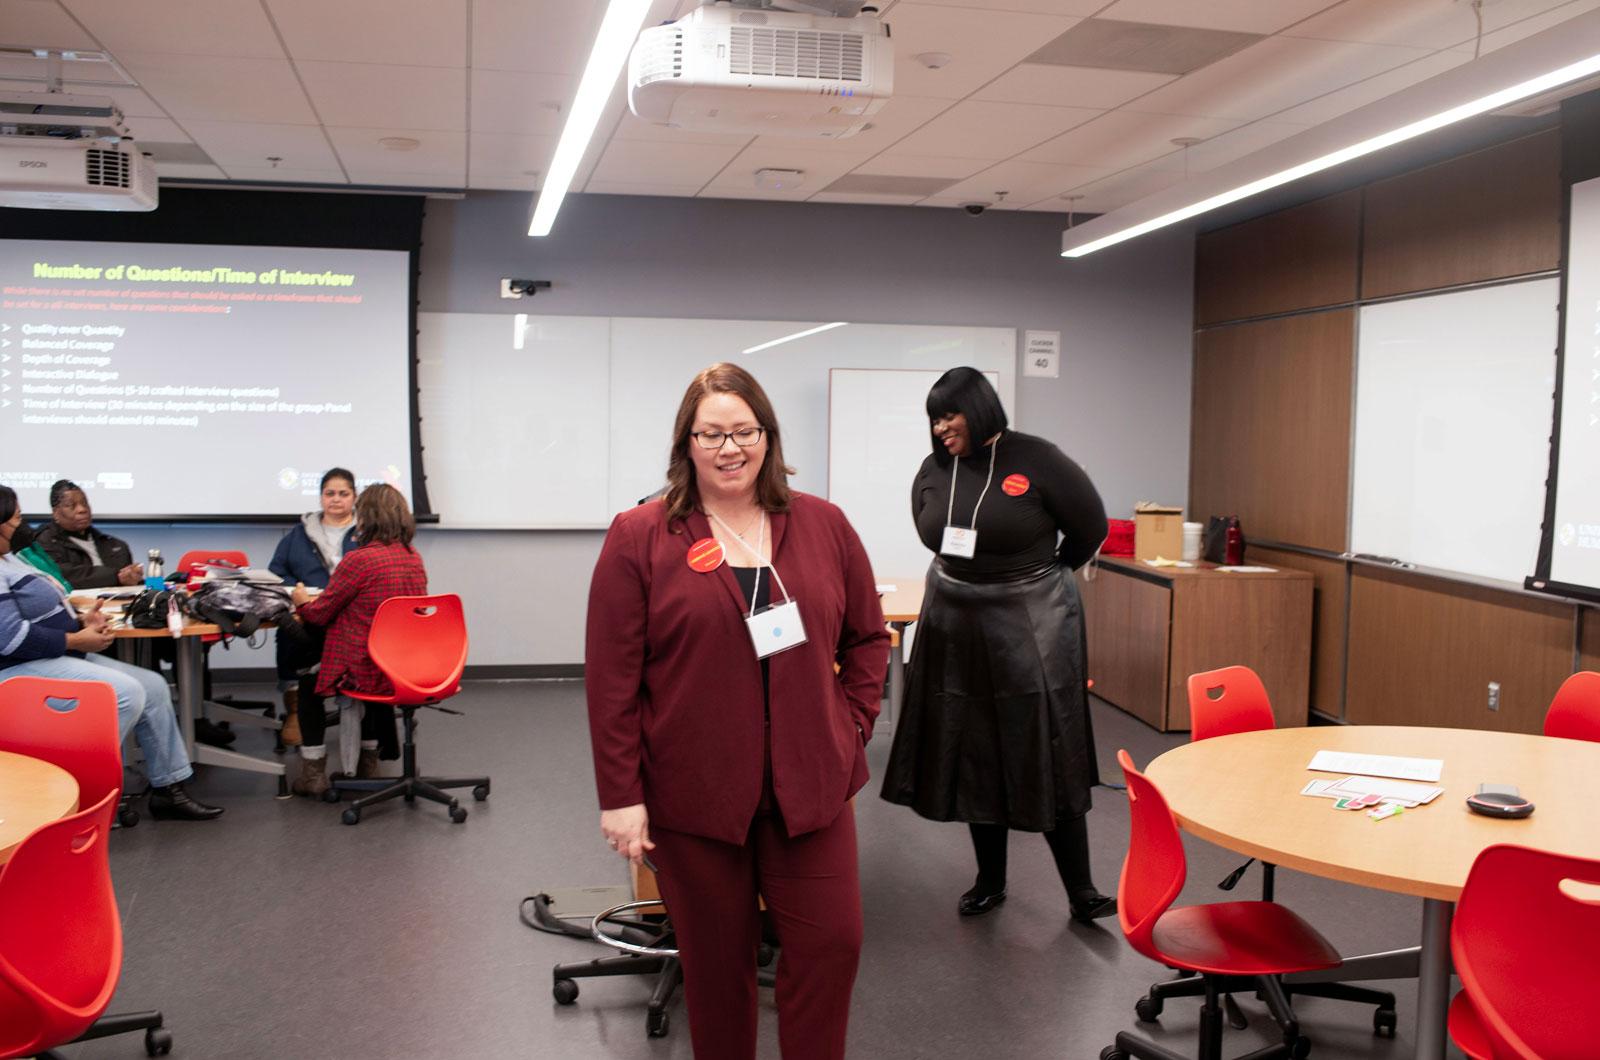 Rashida Bailey & Amy Swartz presenting in a classroom